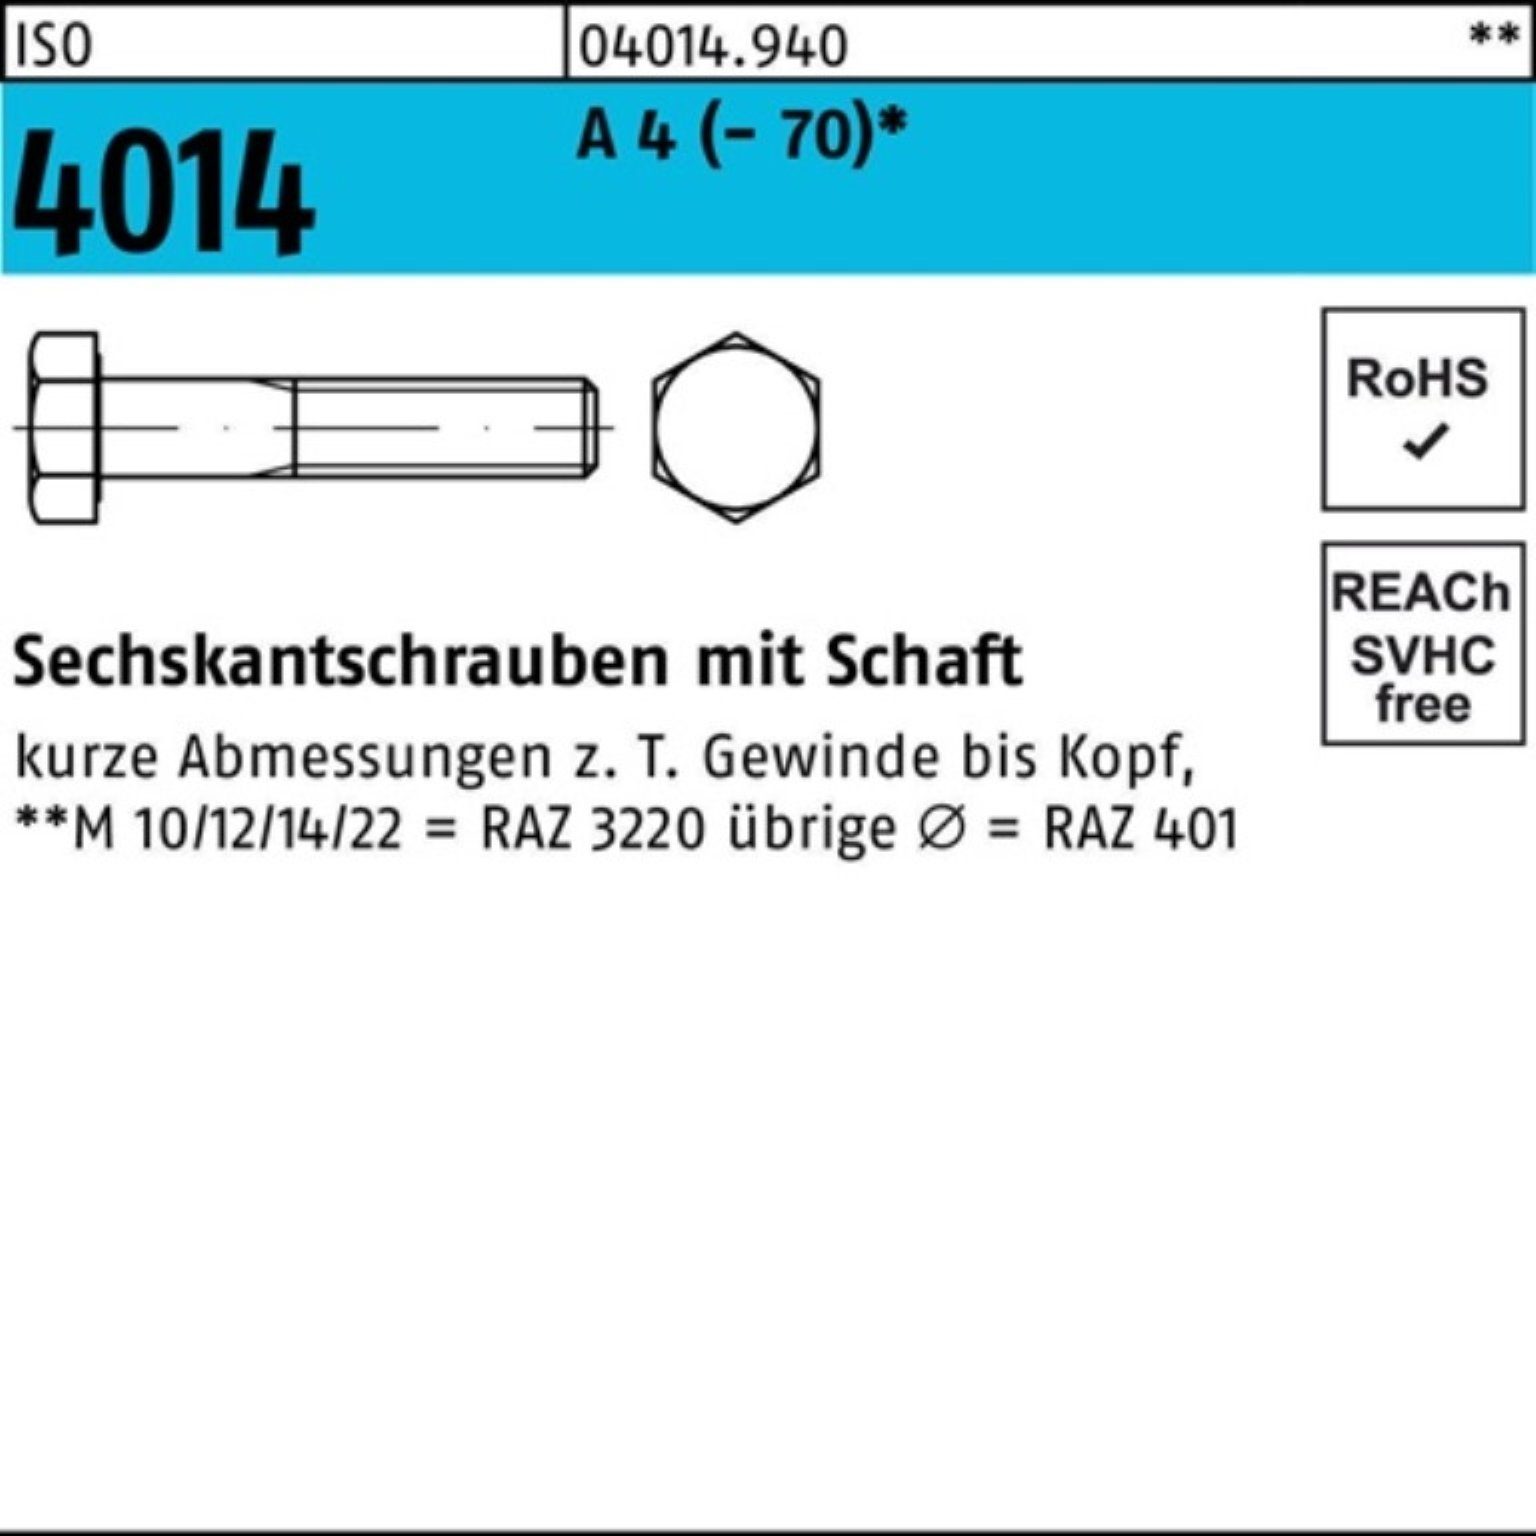 Bufab Sechskantschraube 100er Pack Sechskantschraube ISO 4014 Schaft M24x 100 A 4 (70) 1 St